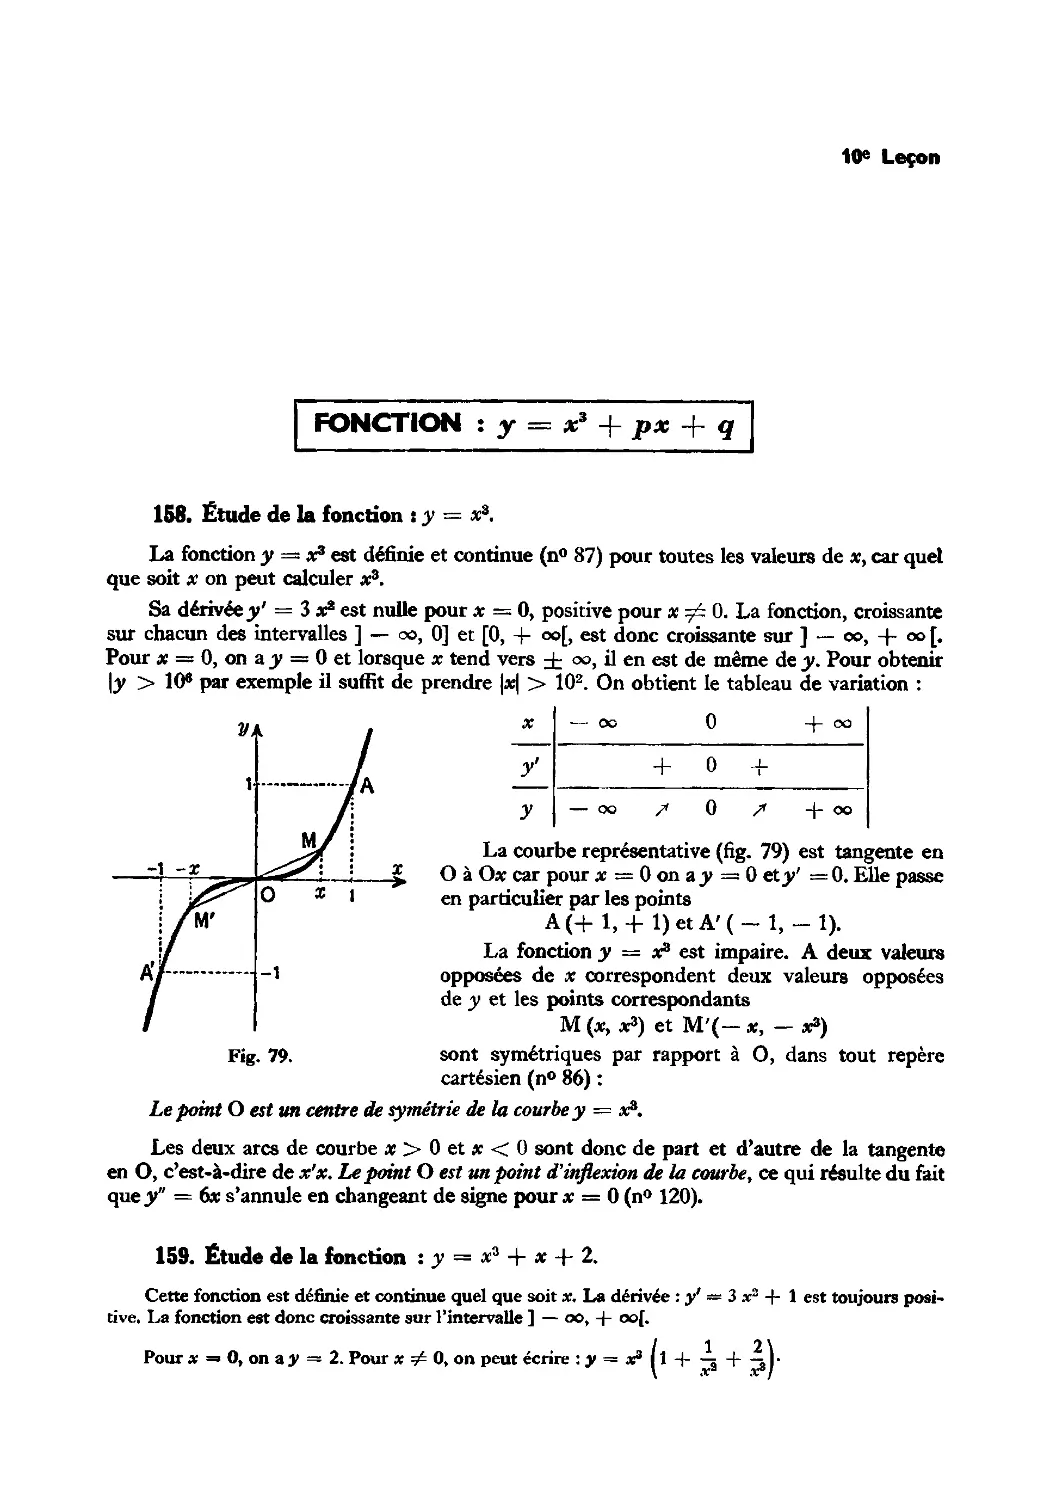 Leçon 10 — Fonctions : y = x³ + px + q et y = ax⁴ + bx² + c
159. Étude de la fonction : y = x³ + x + 2